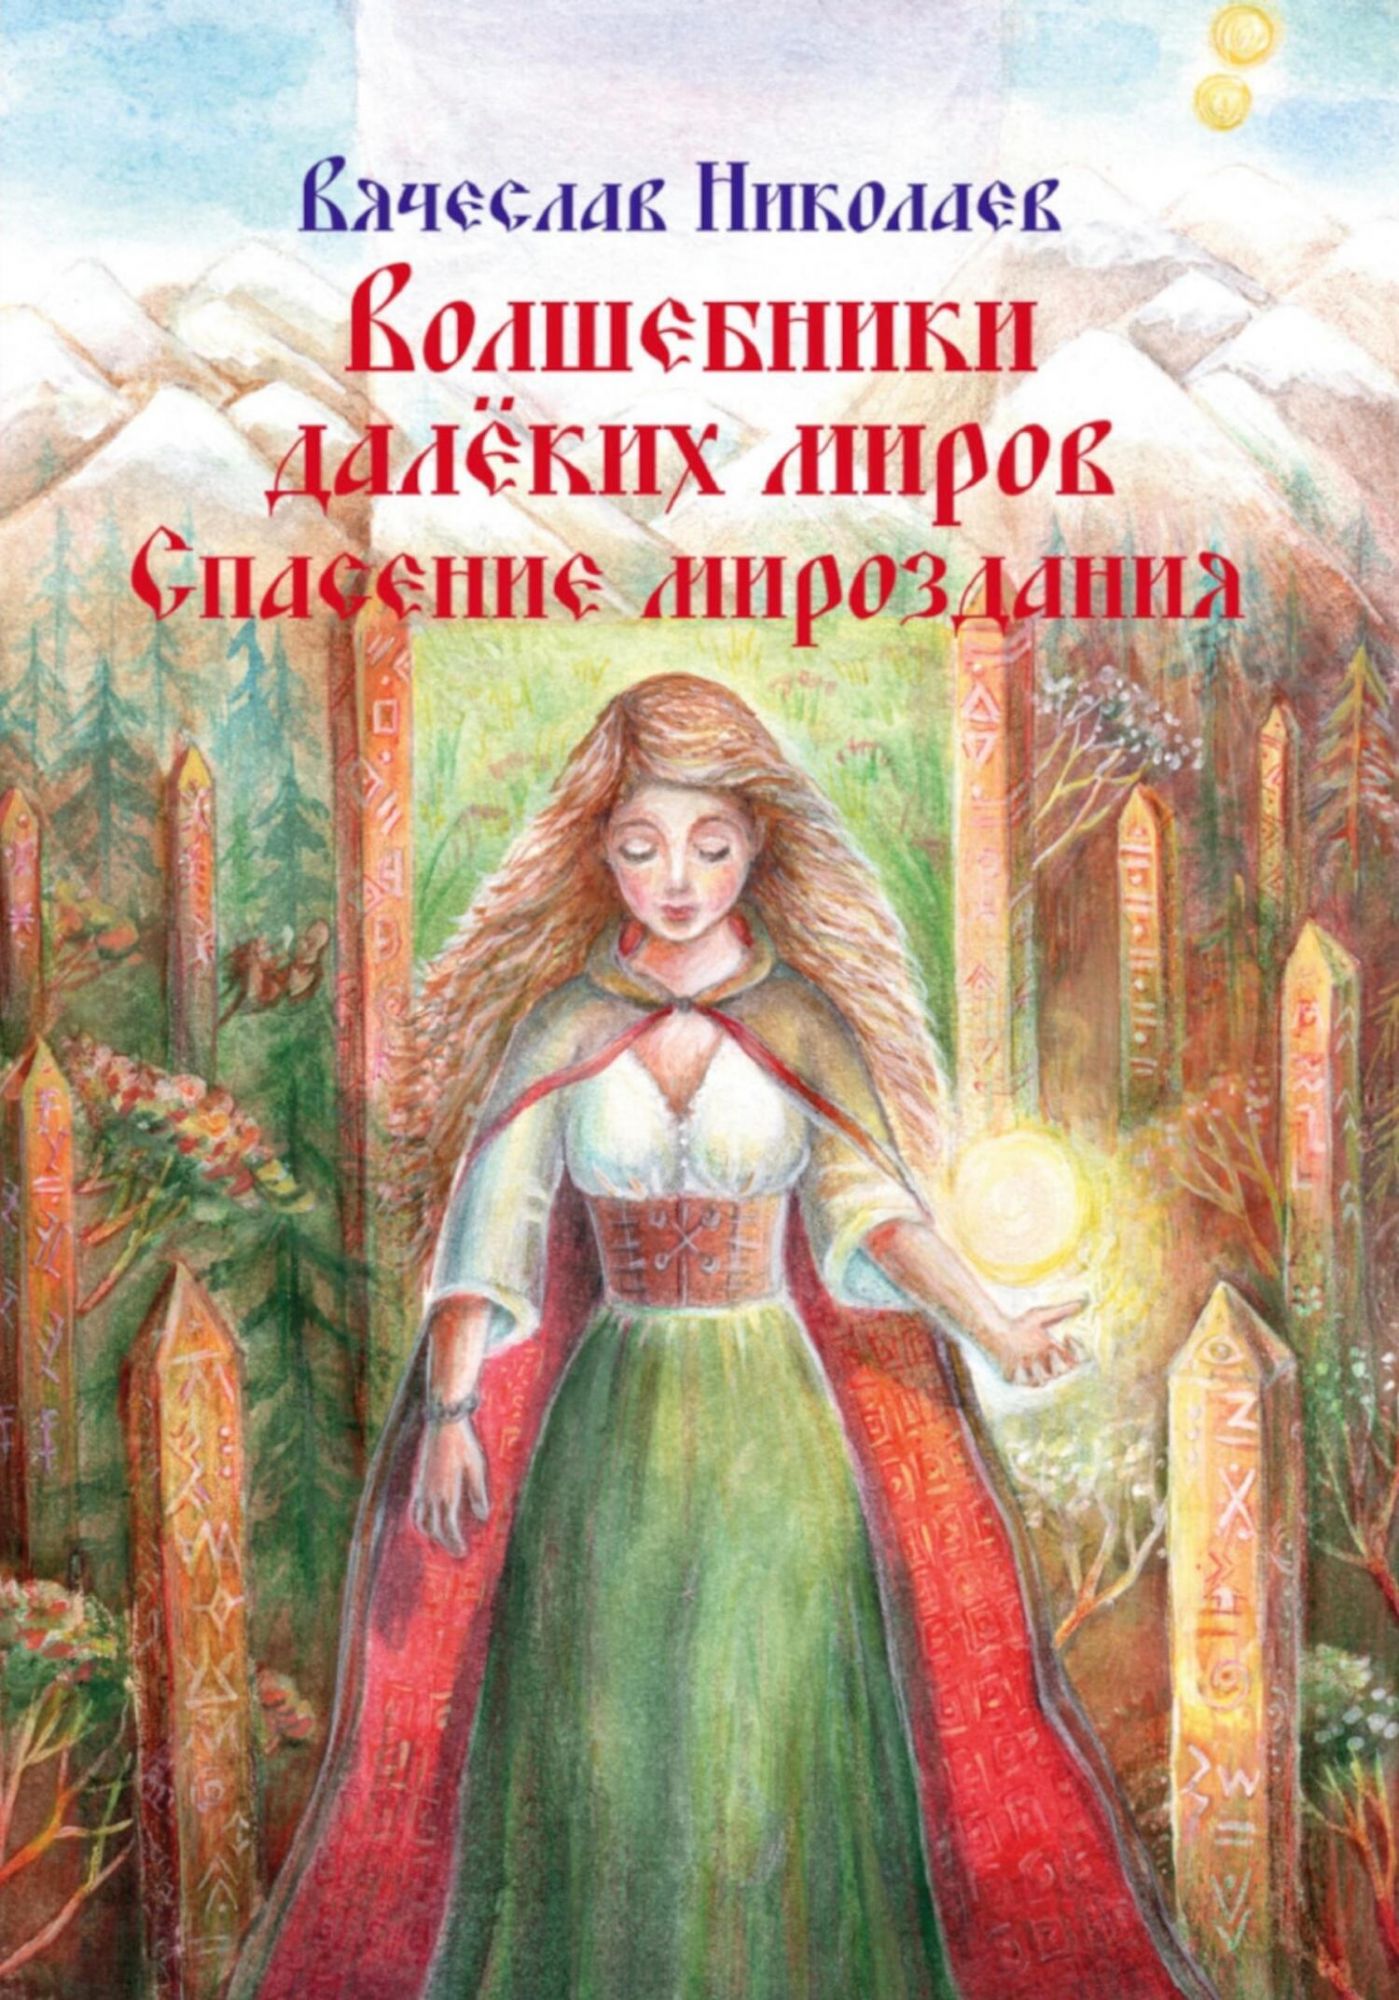 Аудиокнига волшебник зем. Нам открывать миры далекие. Аудио книга спасти одету. Женщина русских вселенных читать стих.